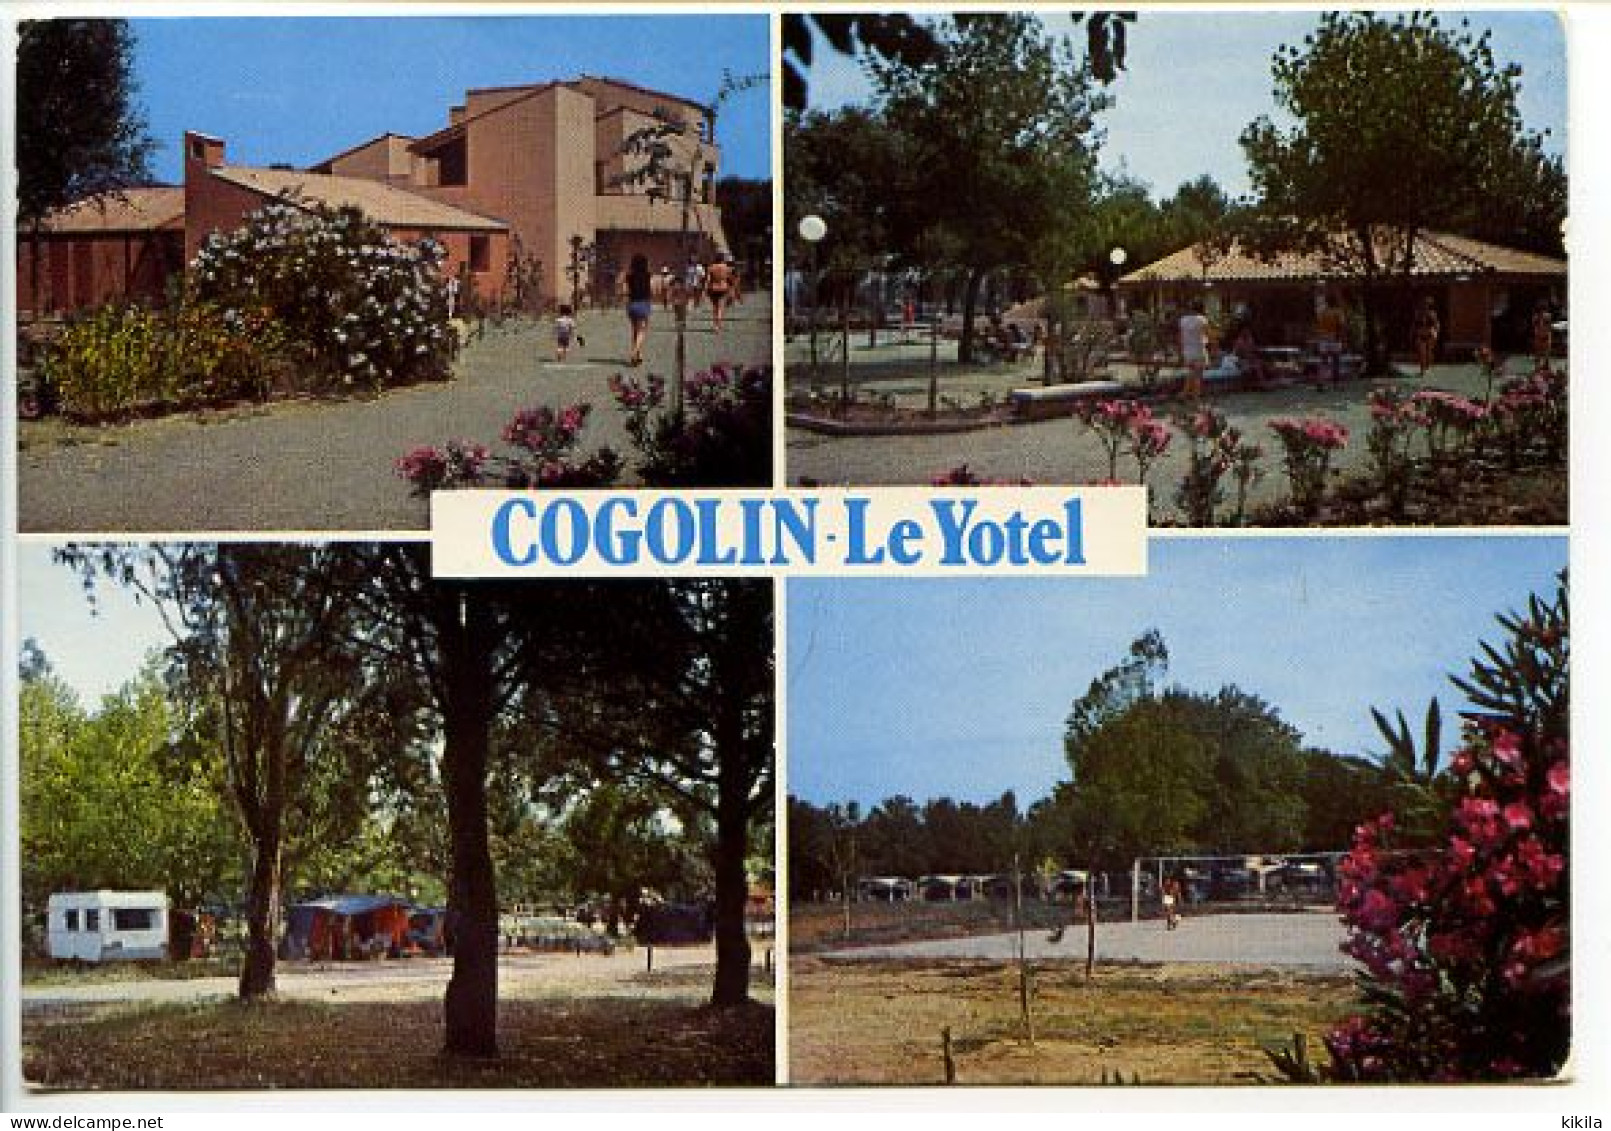 CPSM 10.5 X 15 Var COGOLIN  Le Yotel Carrefour De La Foux Tourisme Et Travail Tel (94) 56.20.44 Camping Libre "aménagé" - Cogolin